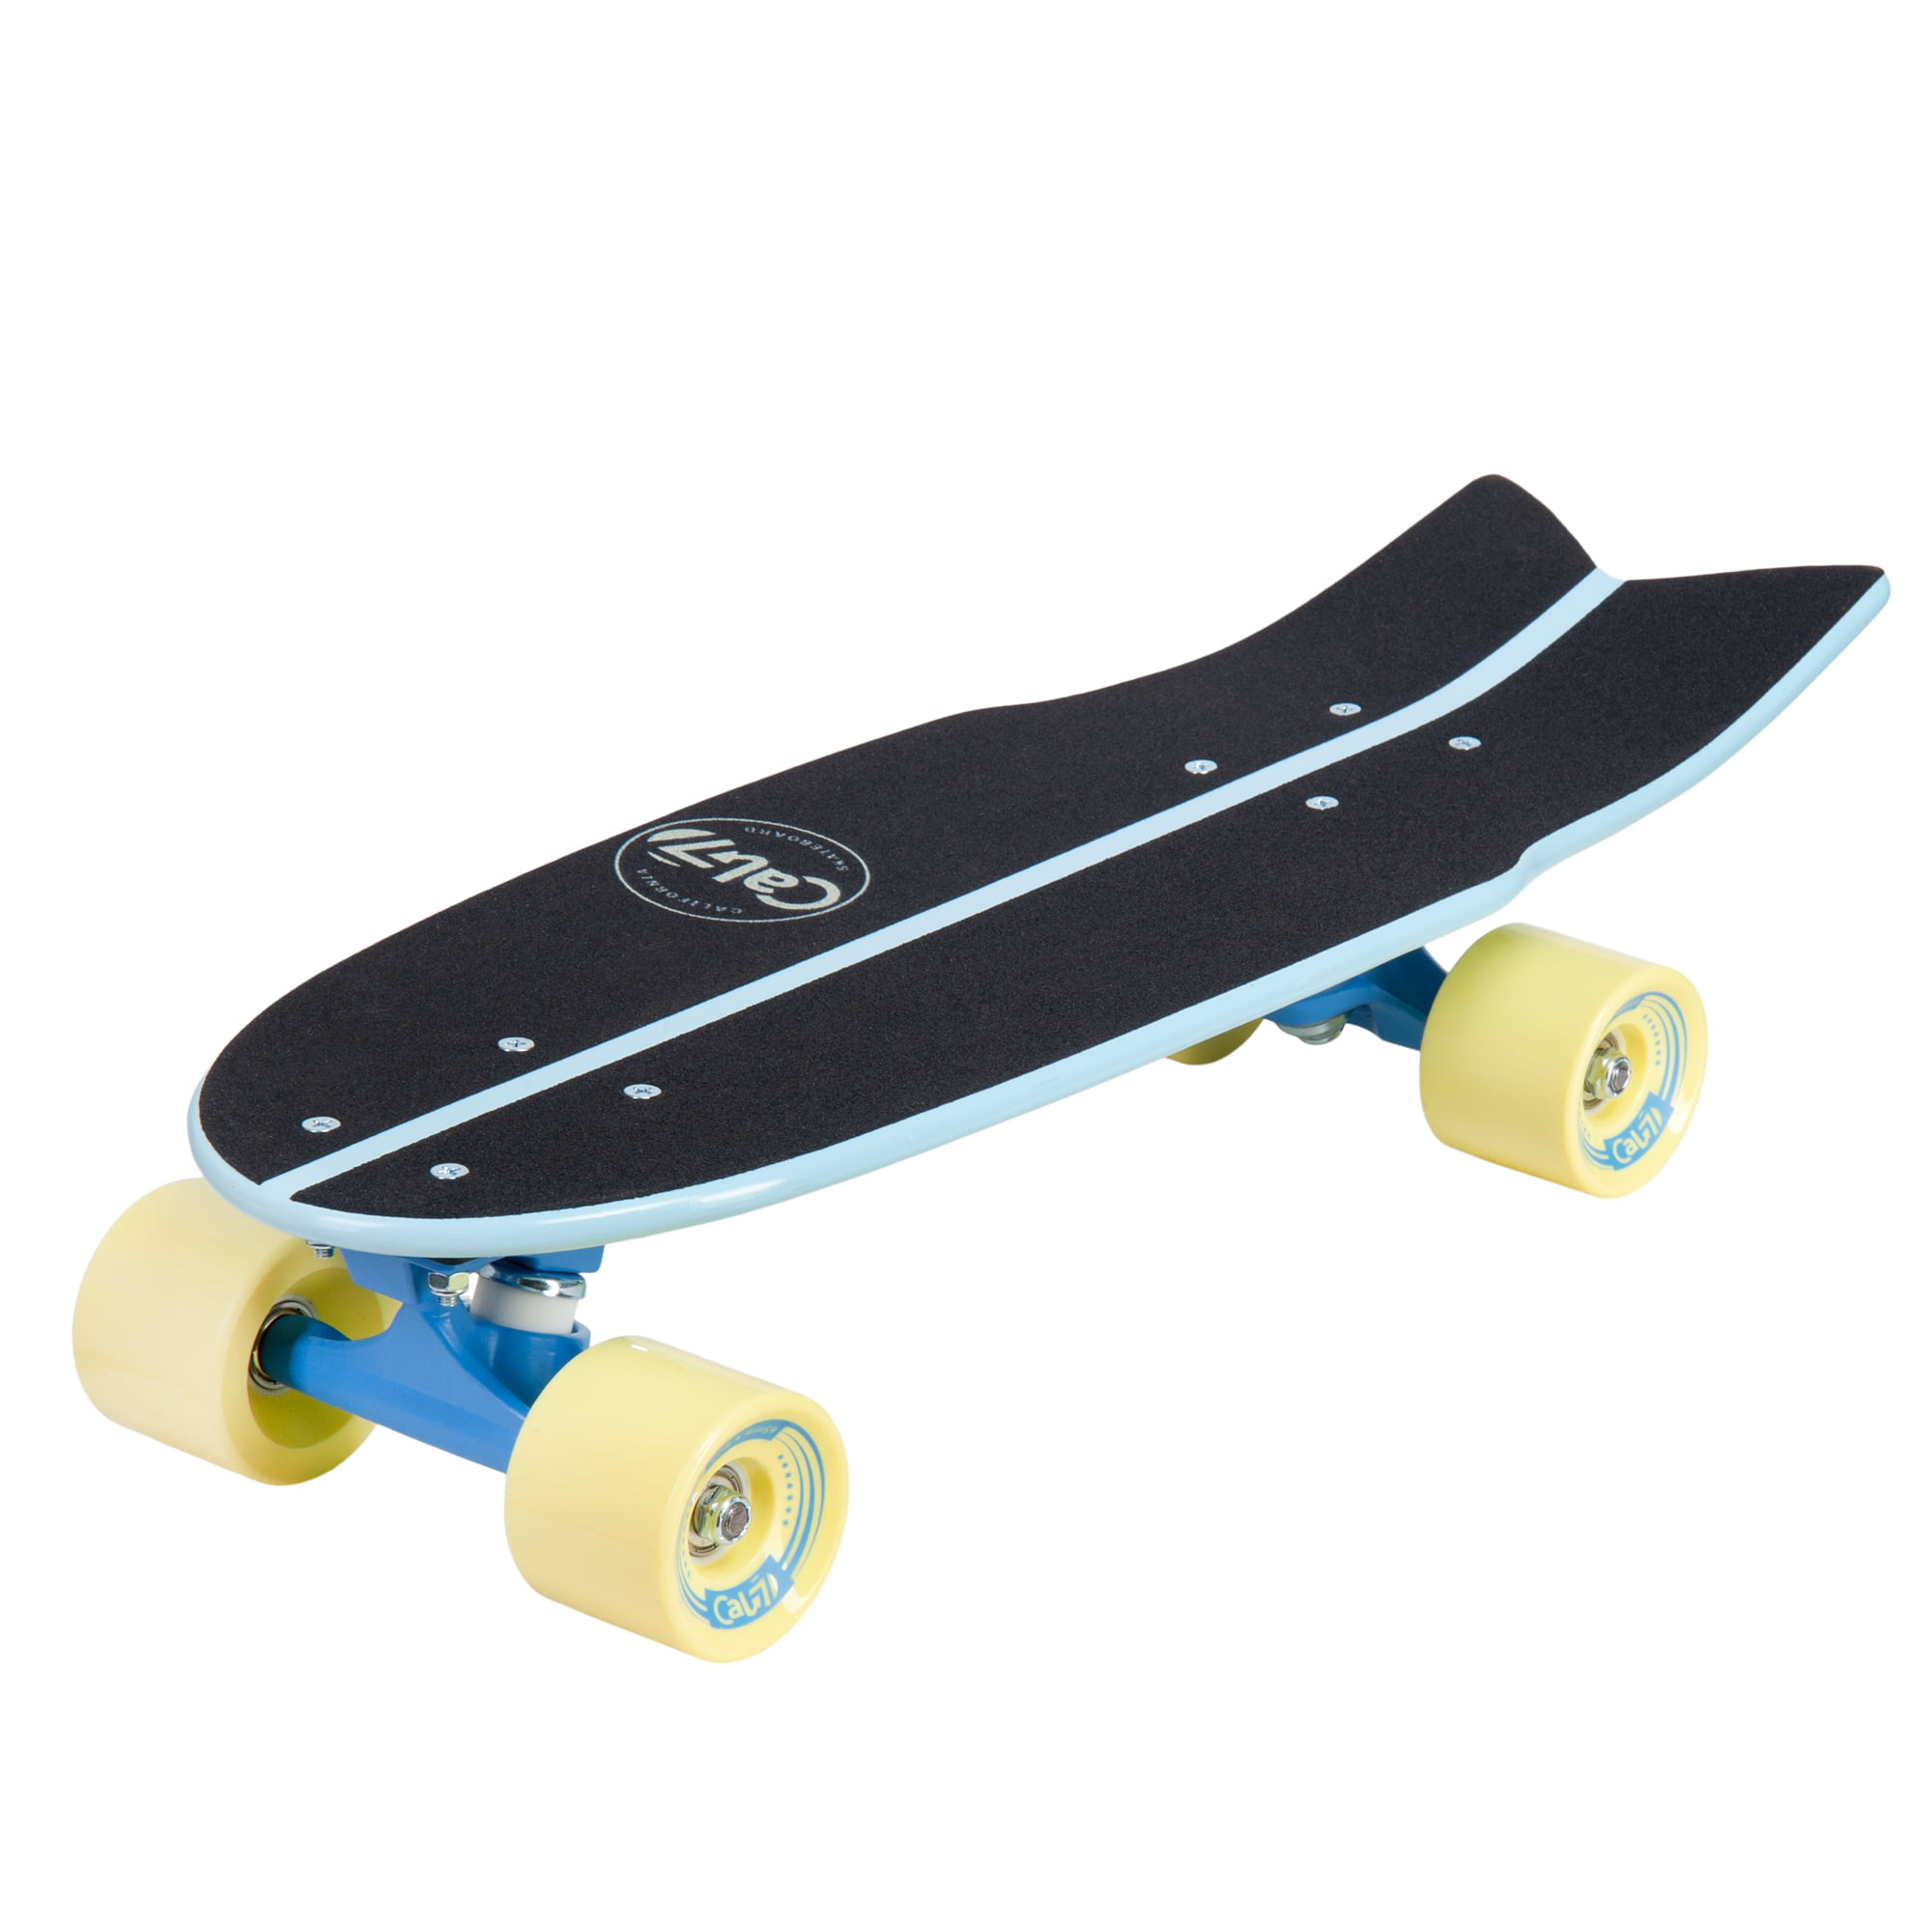 Cal 7 Fishtail Deck 22-inch Mini Cruiser Skateboard (Glory) Walmart.com